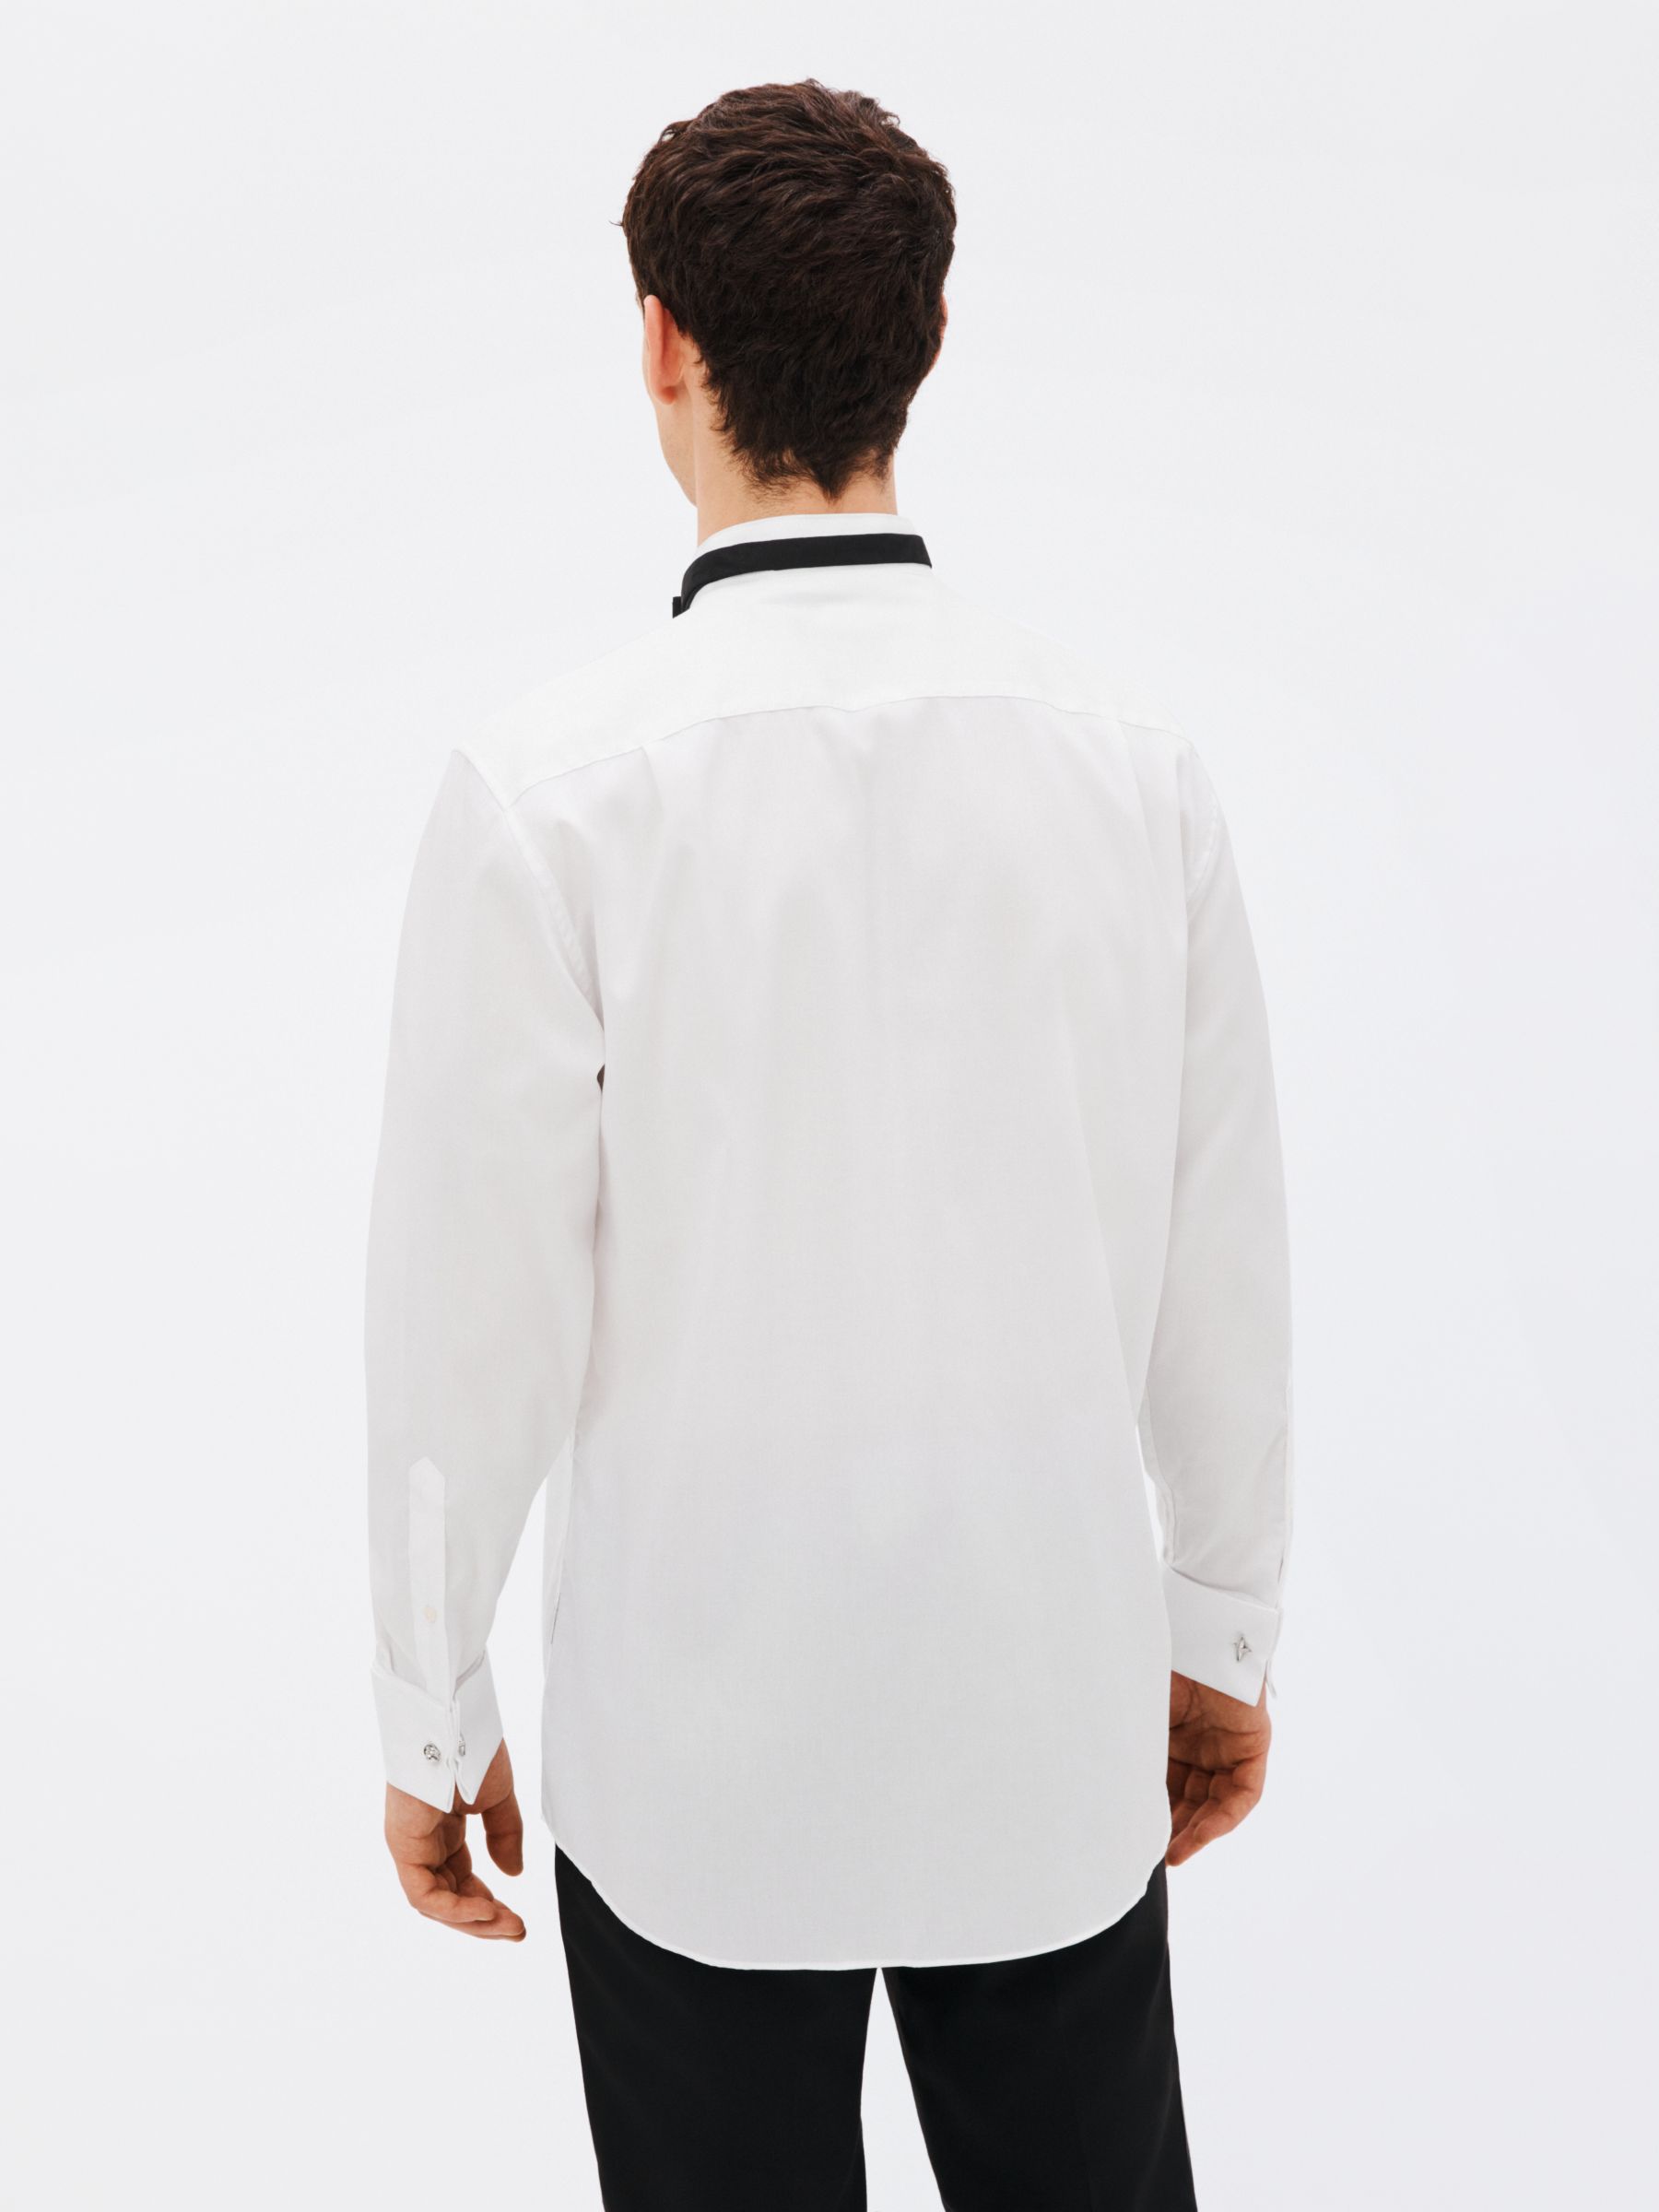 Buy John Lewis Marcella Wing Collar Regular Fit Dress Shirt, White Online at johnlewis.com